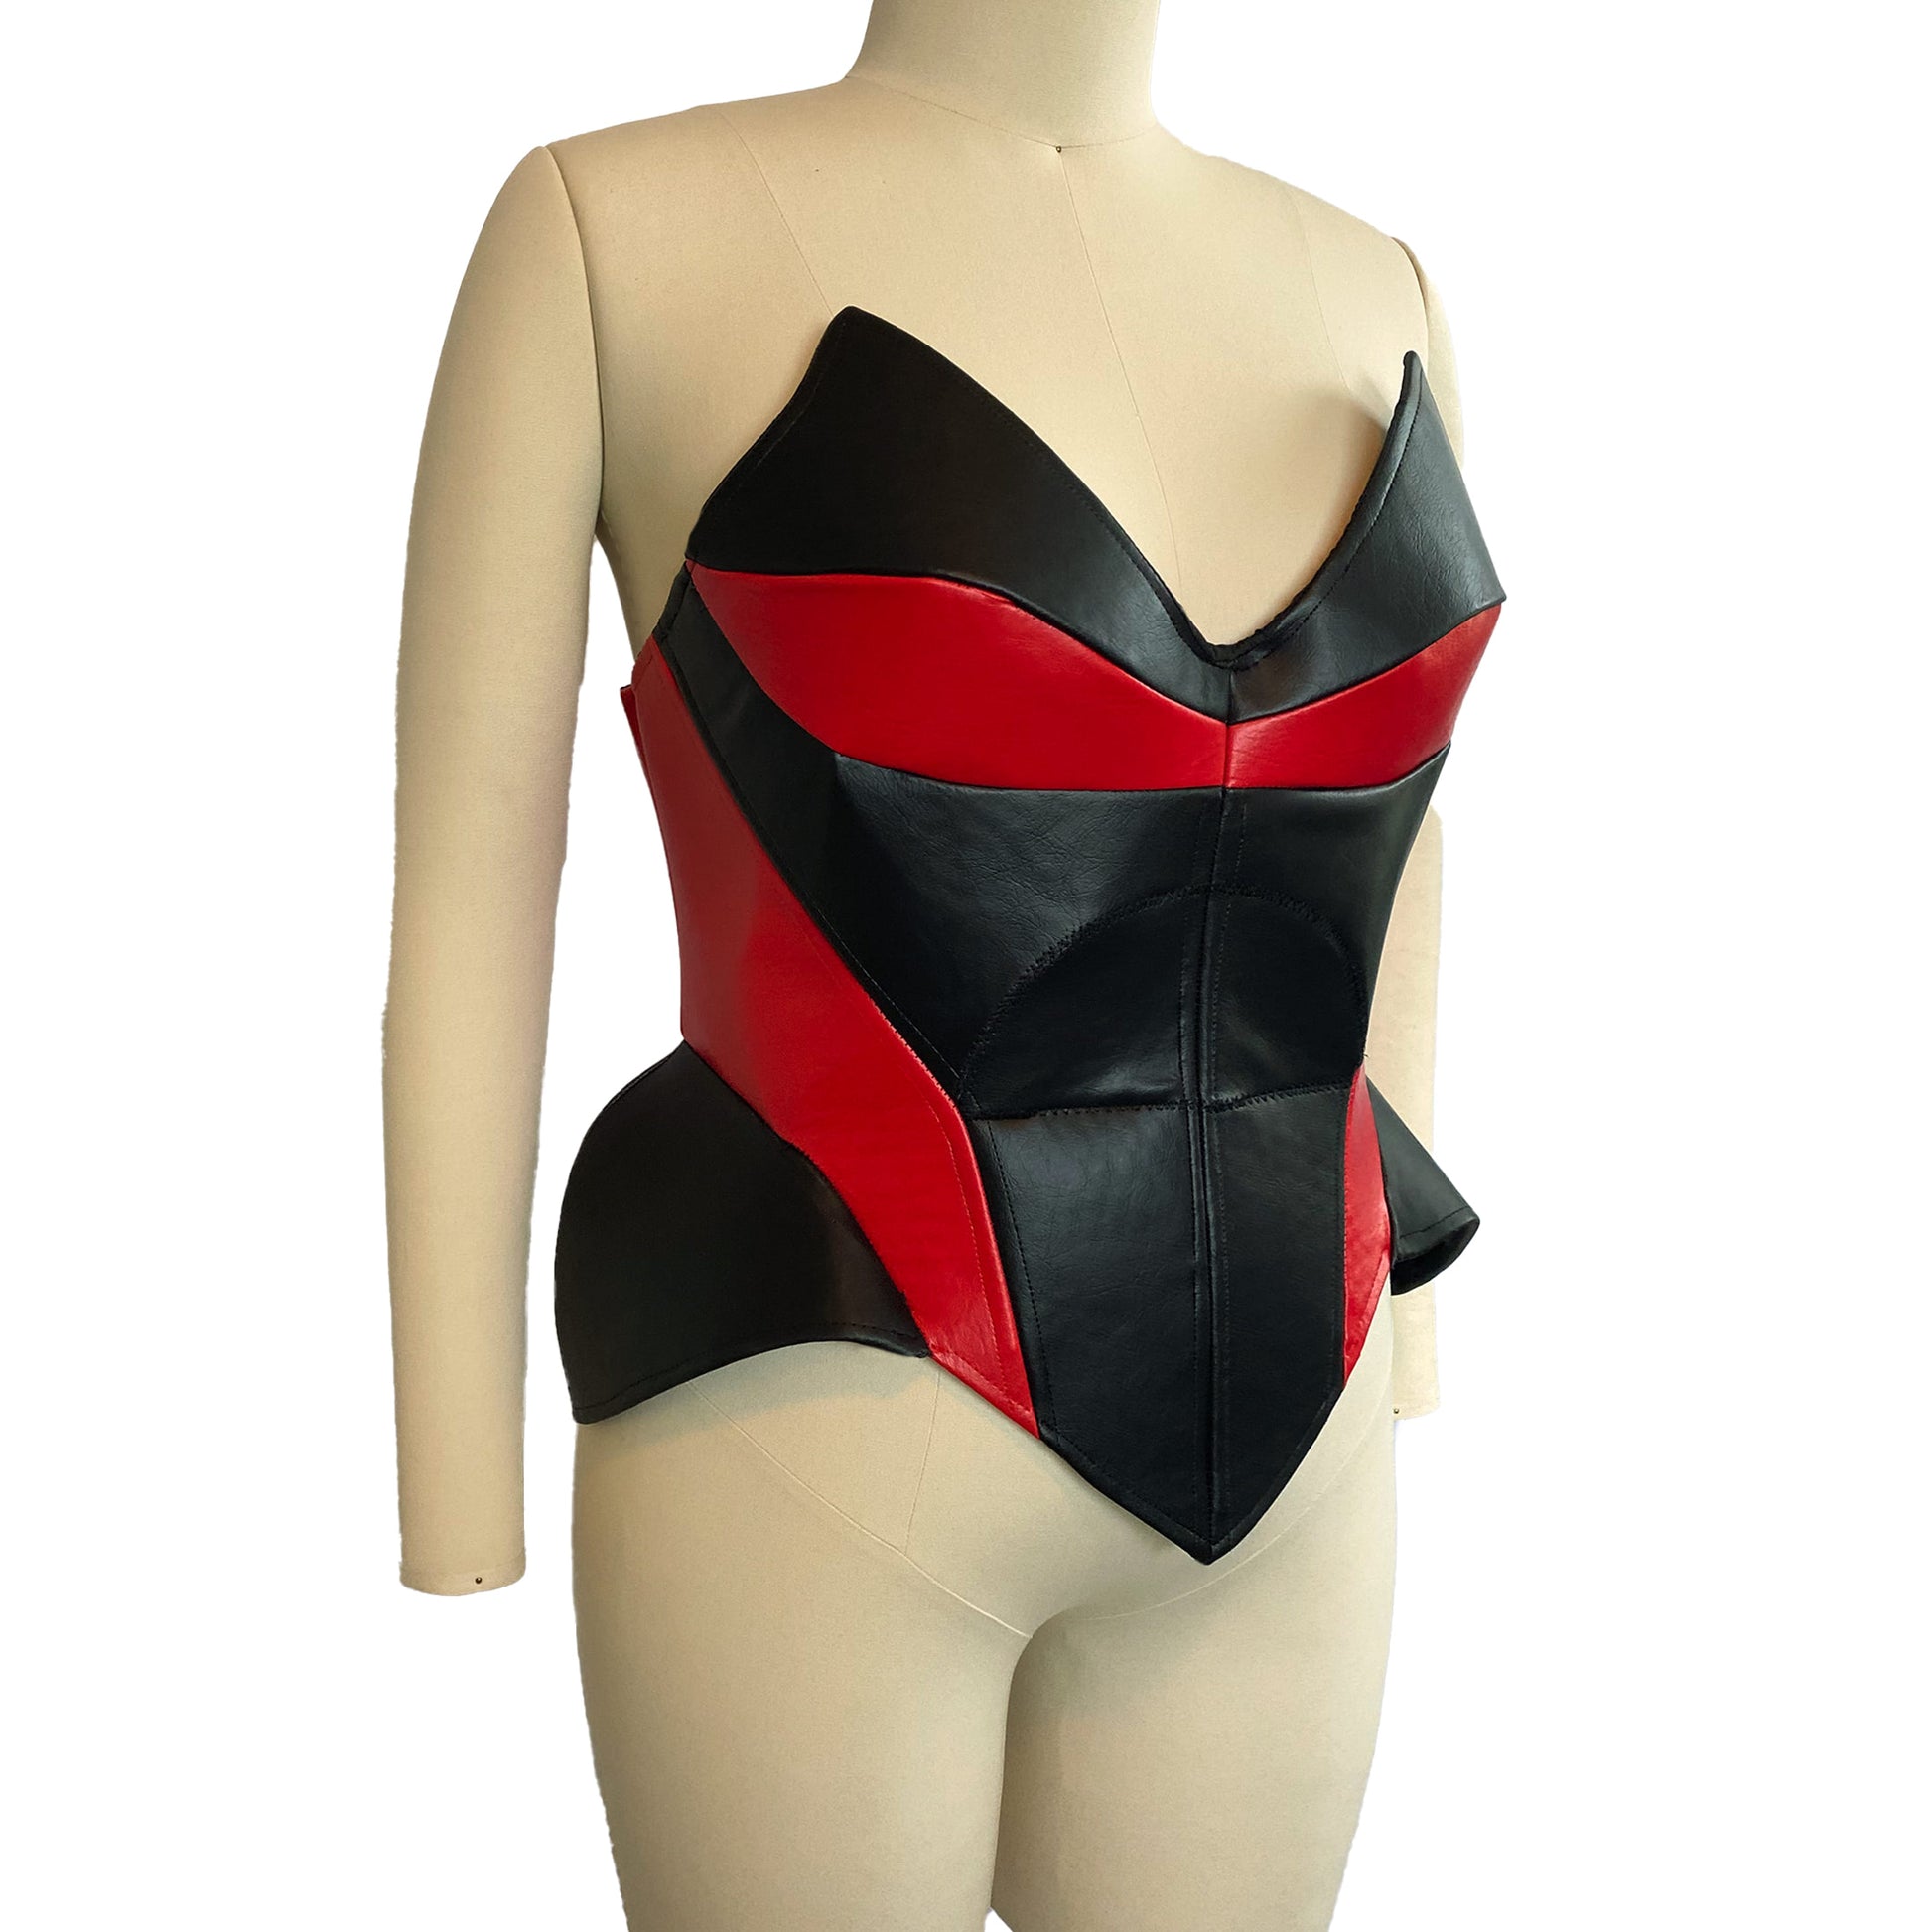 https://www.katkow.net/cdn/shop/files/katkow-drag-queen-bee-corset-sewing-pattern-a.jpg?v=1687380638&width=1946